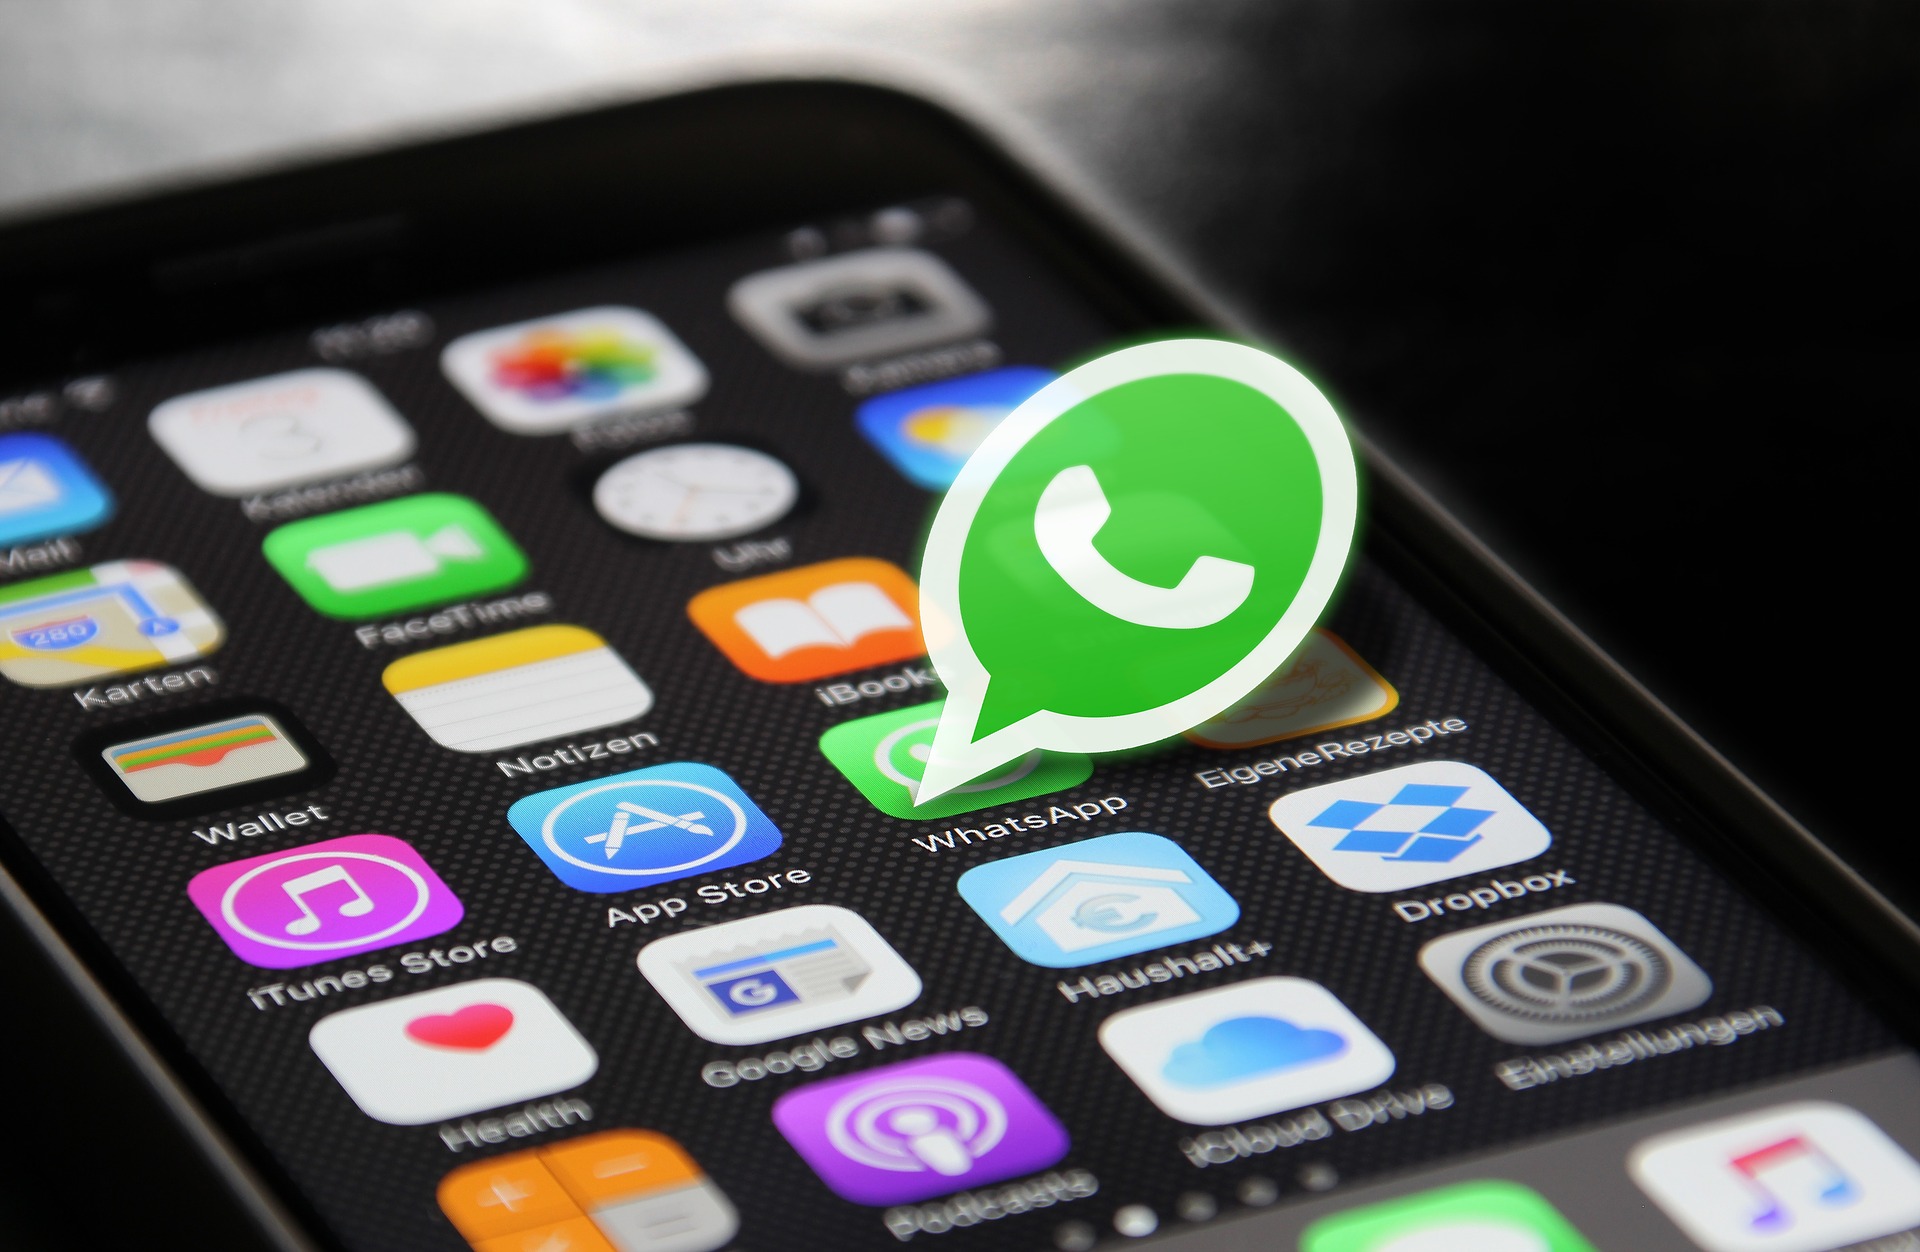 Cara Menyembunyikan Status Online di WhatsApp, Gampang Kok 